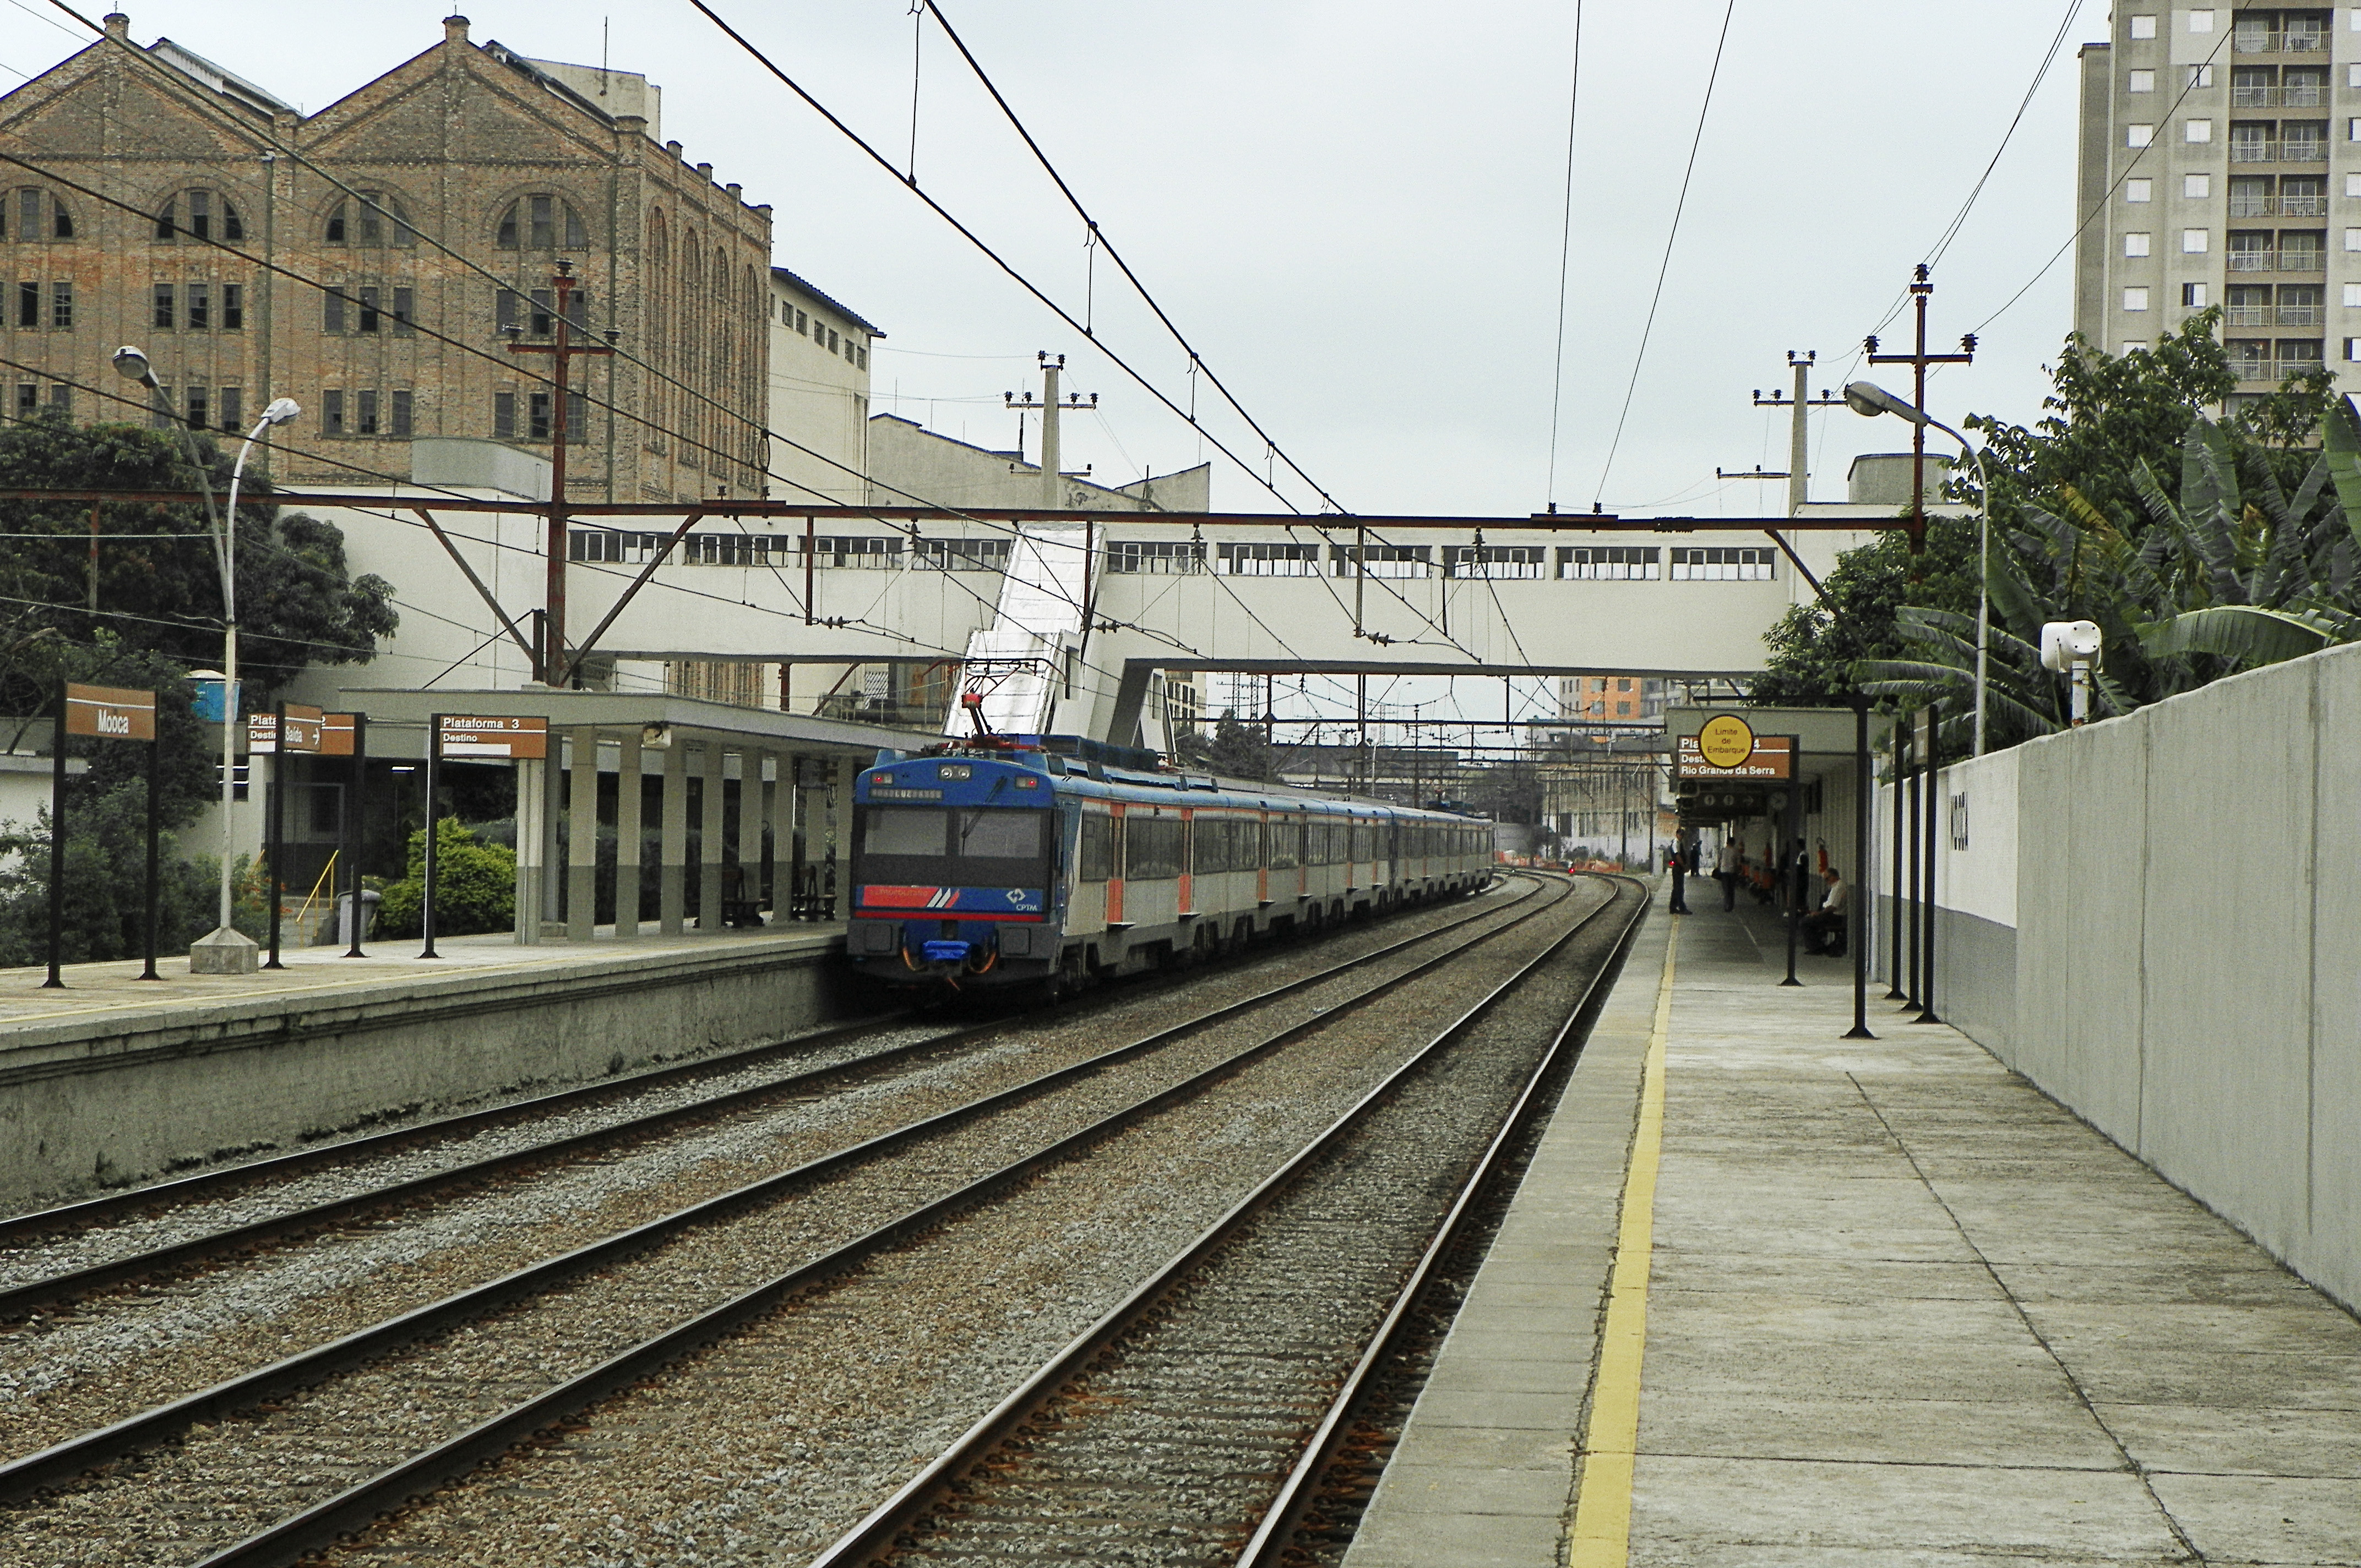 Metrô e CPTM divulgam licitação para concessão de uso de área comercial na  Estação Brás